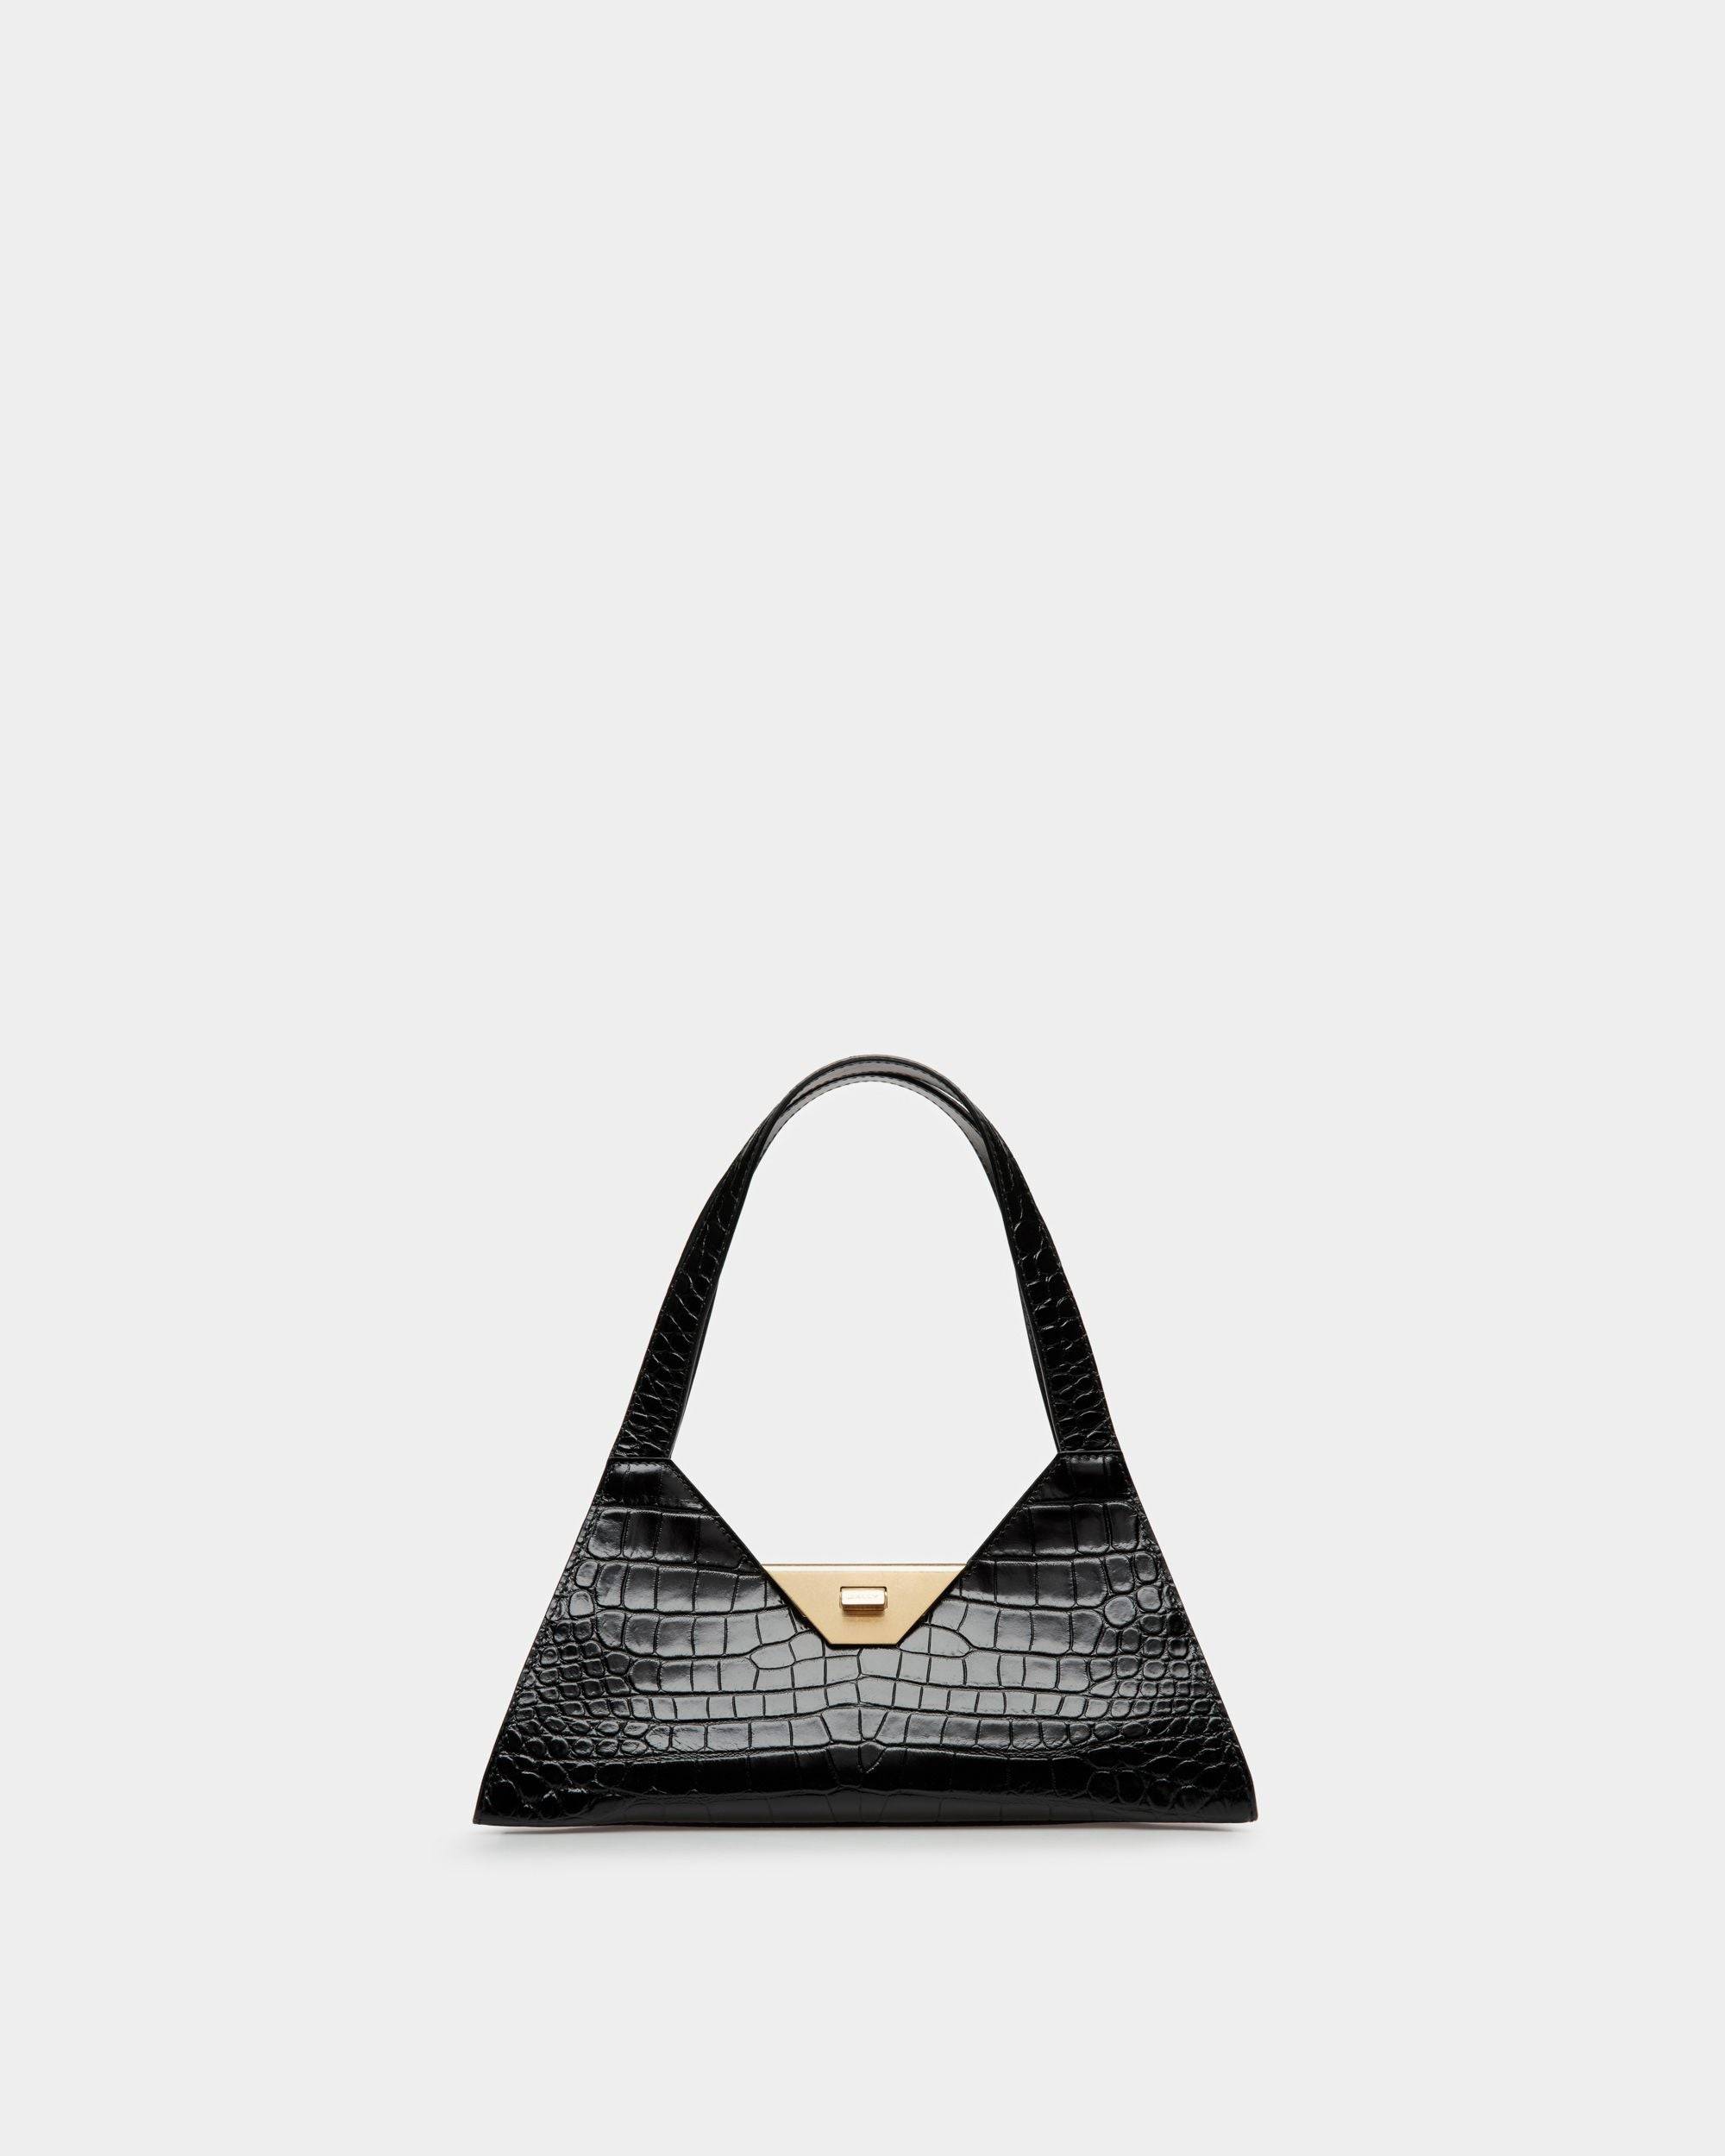 Trilliant Small Shoulder Bag | Women's Shoulder Bag | Black Leather | Bally | Still Life Front